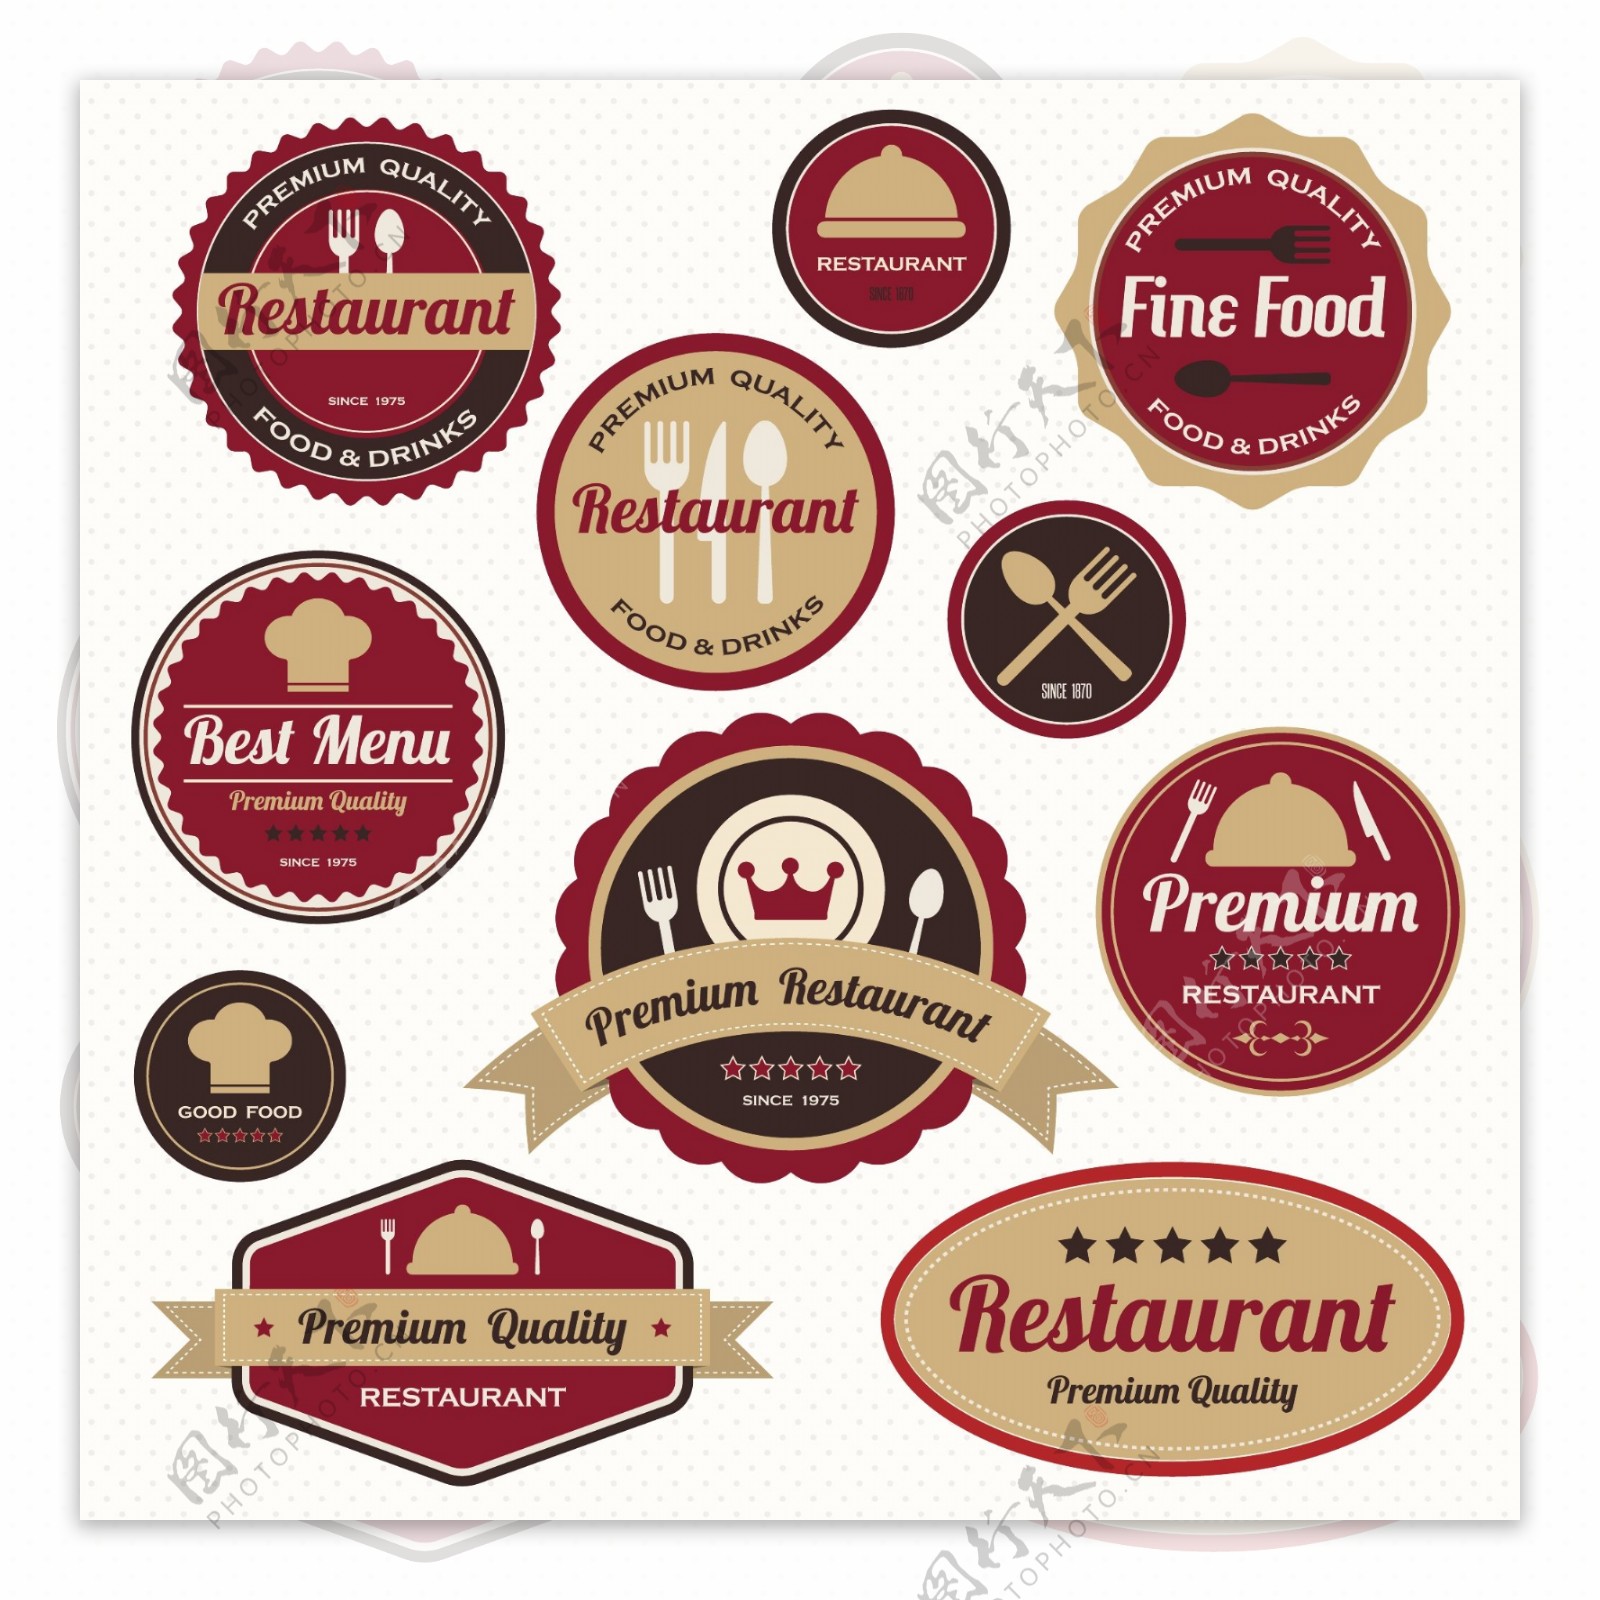 咖啡店餐厅logo图标矢量素材